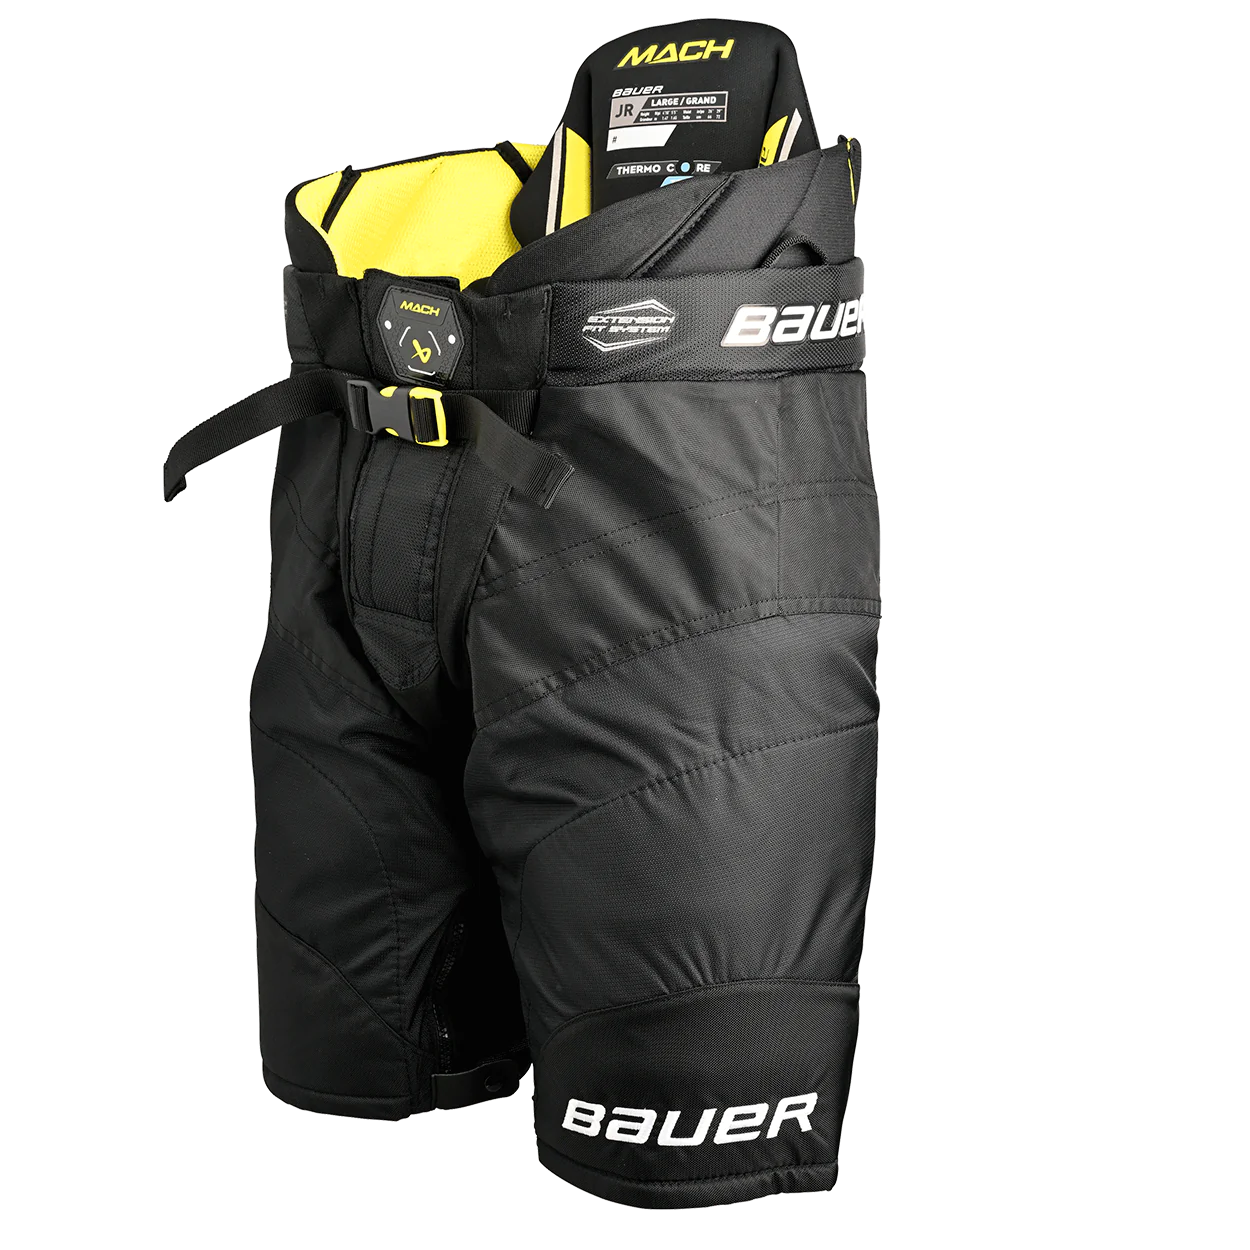 Bauer Supreme Mach Ice Hockey Pants - Junior